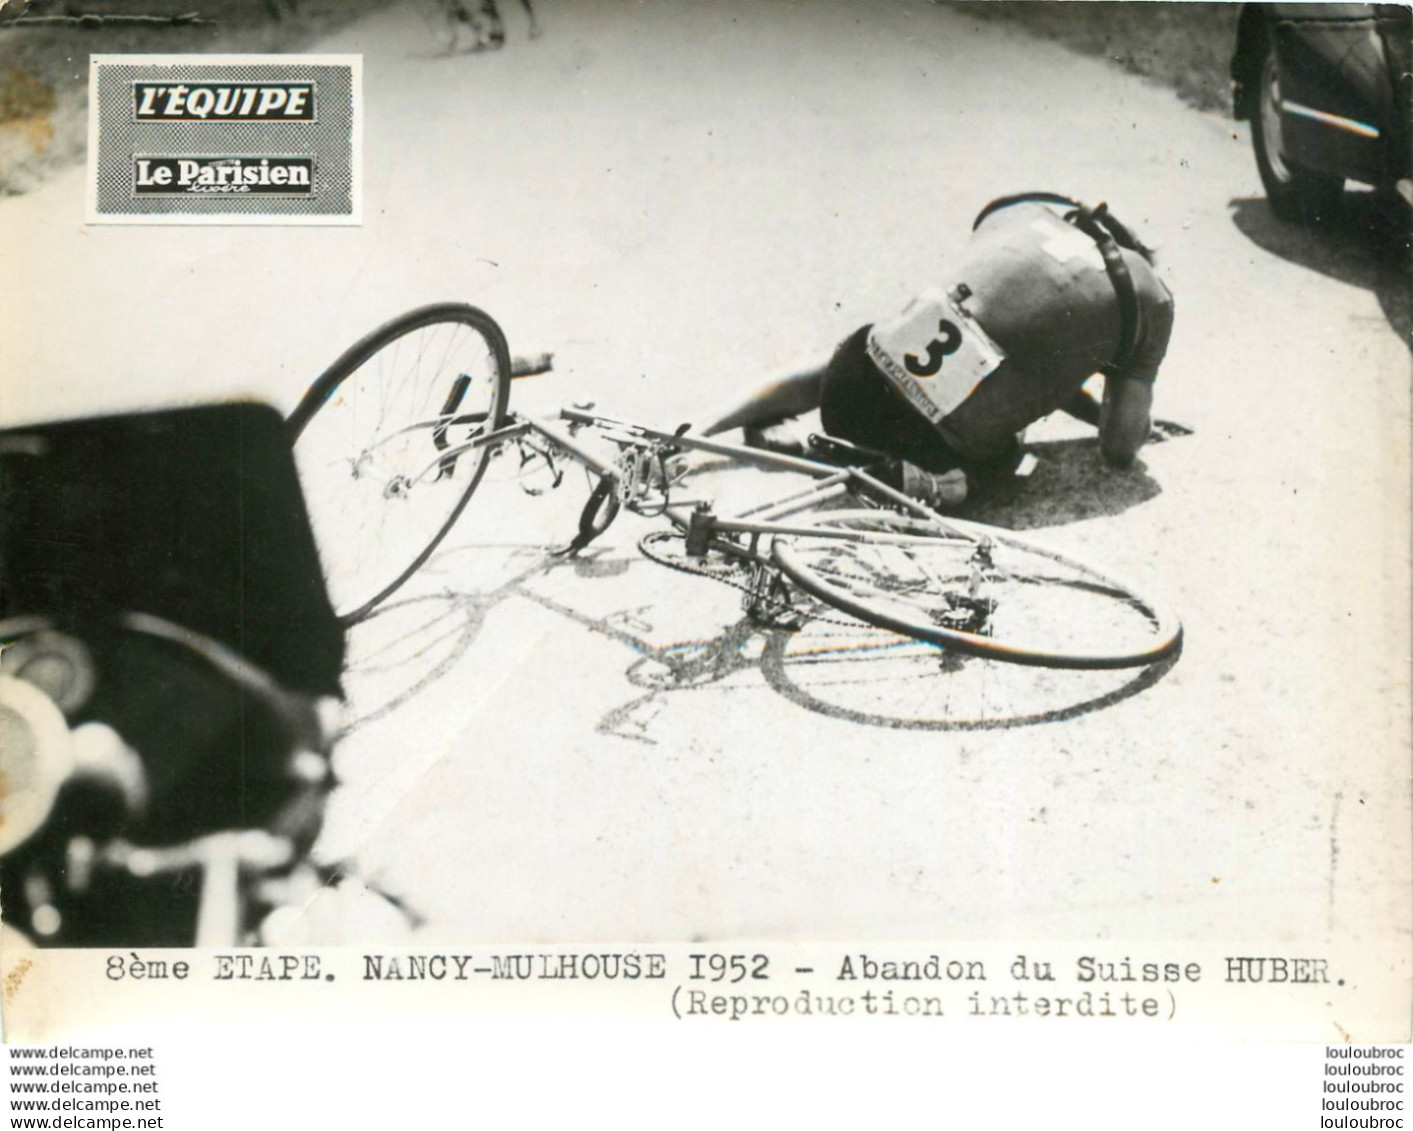 TOUR DE FRANCE 1952 ABANDON DU SUISSE HUBER 8ème ETAPE PHOTO DE PRESSE ORIGINALE ARGENTIQUE  20X15CM EQUIPE  LE PARISIEN - Sport